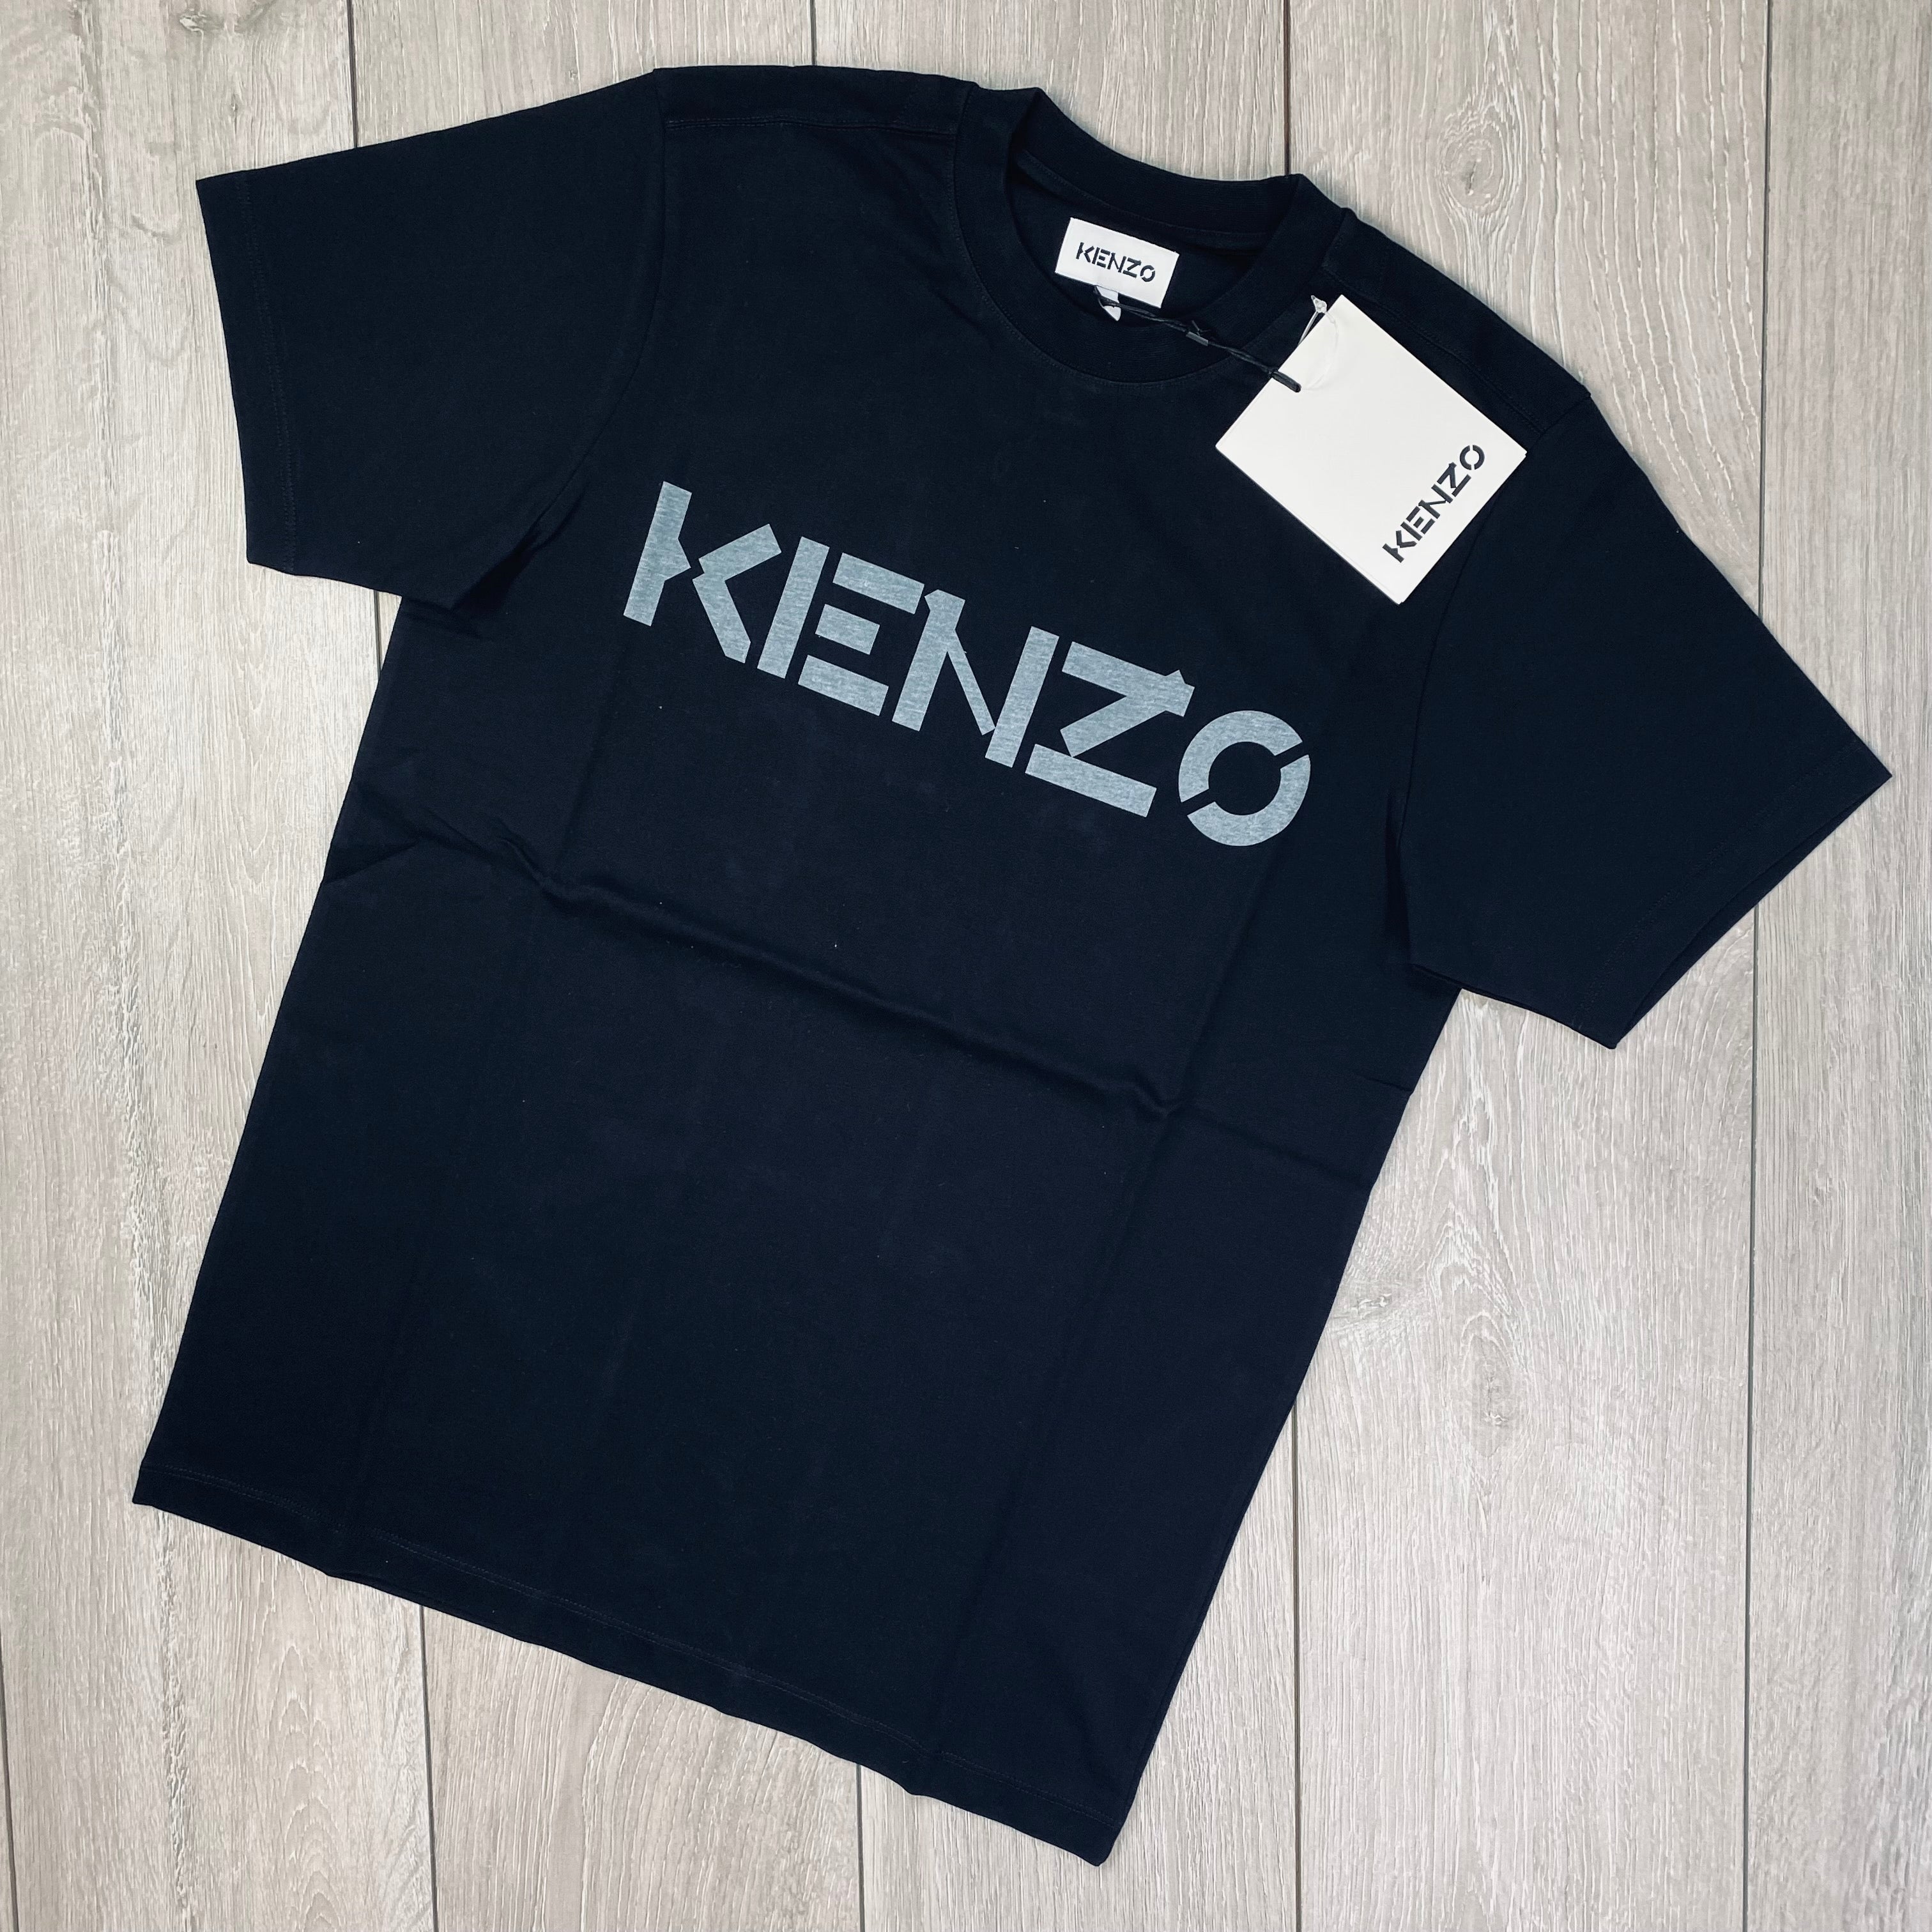 Kenzo Printed T-Shirt